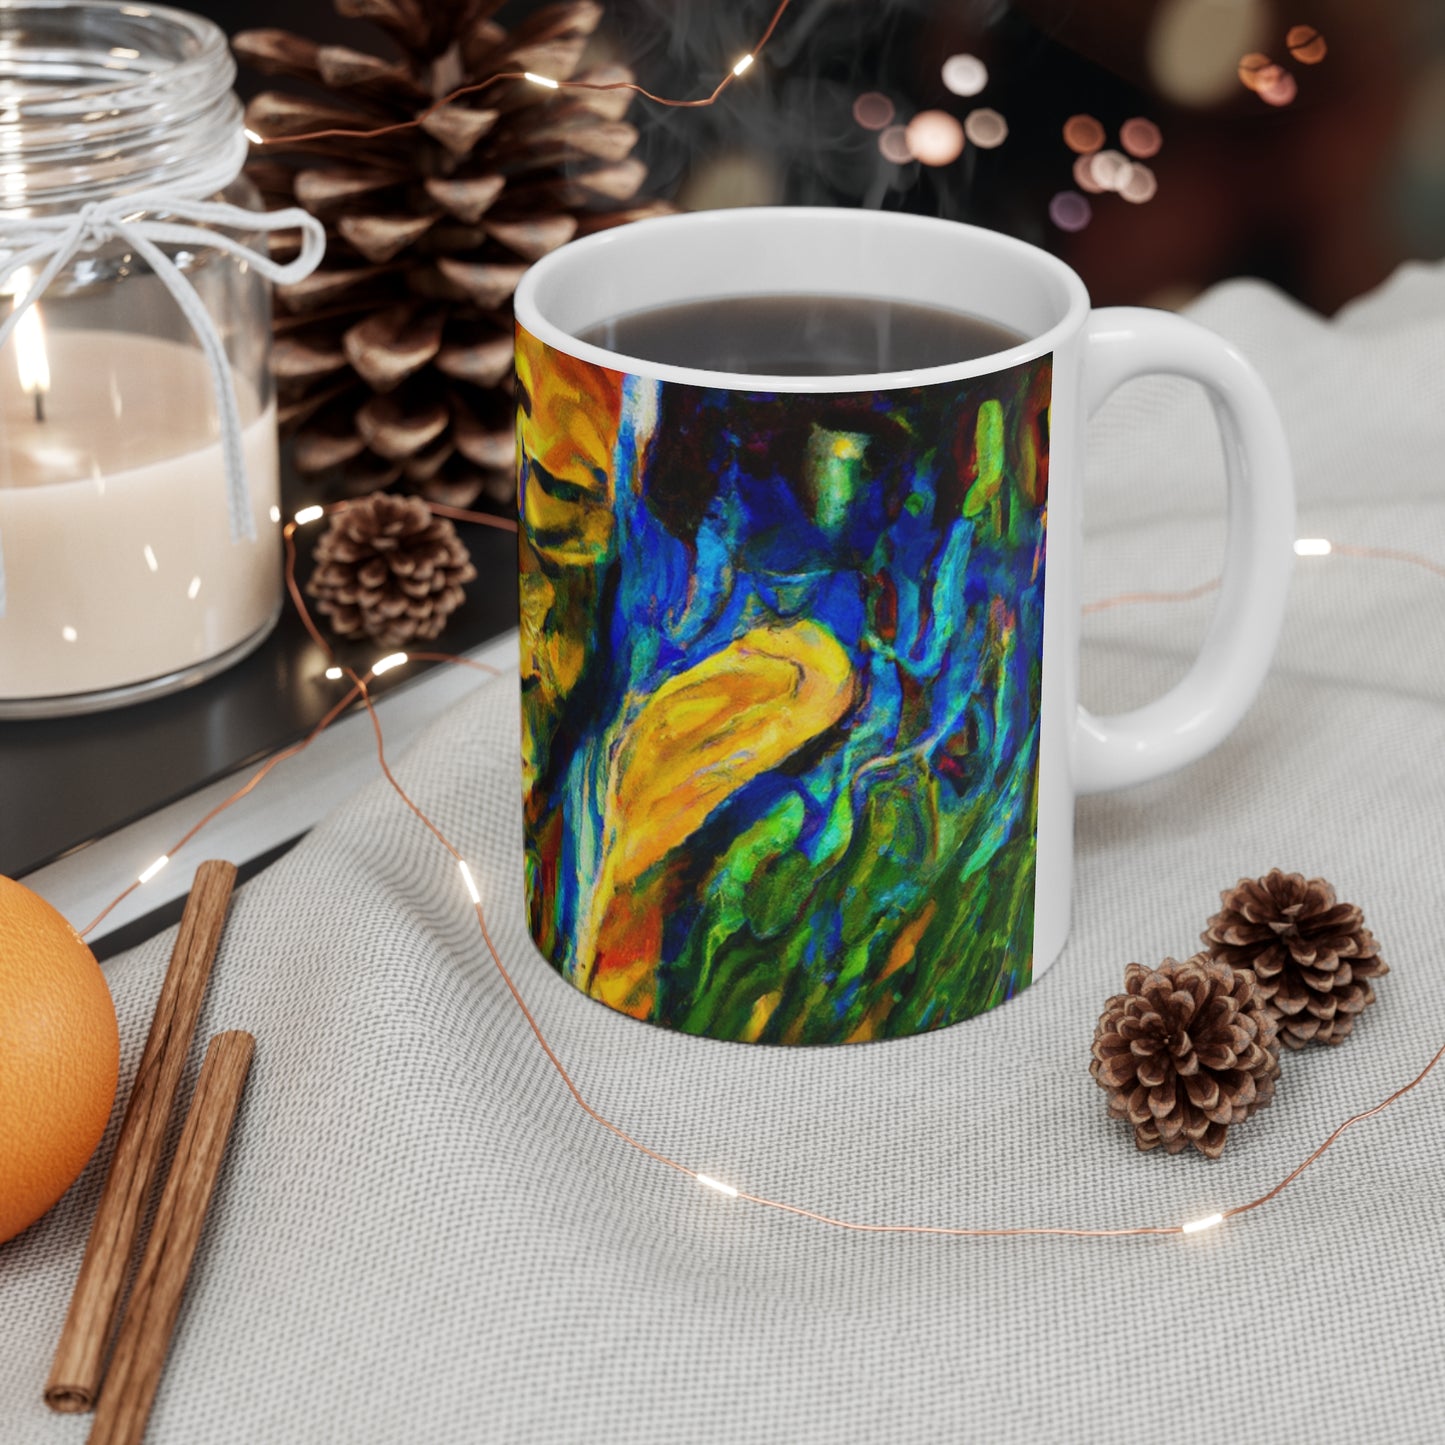 "A Cat Amongst the Celestial Tea Leaves" - The Alien Ceramic Mug 11 oz